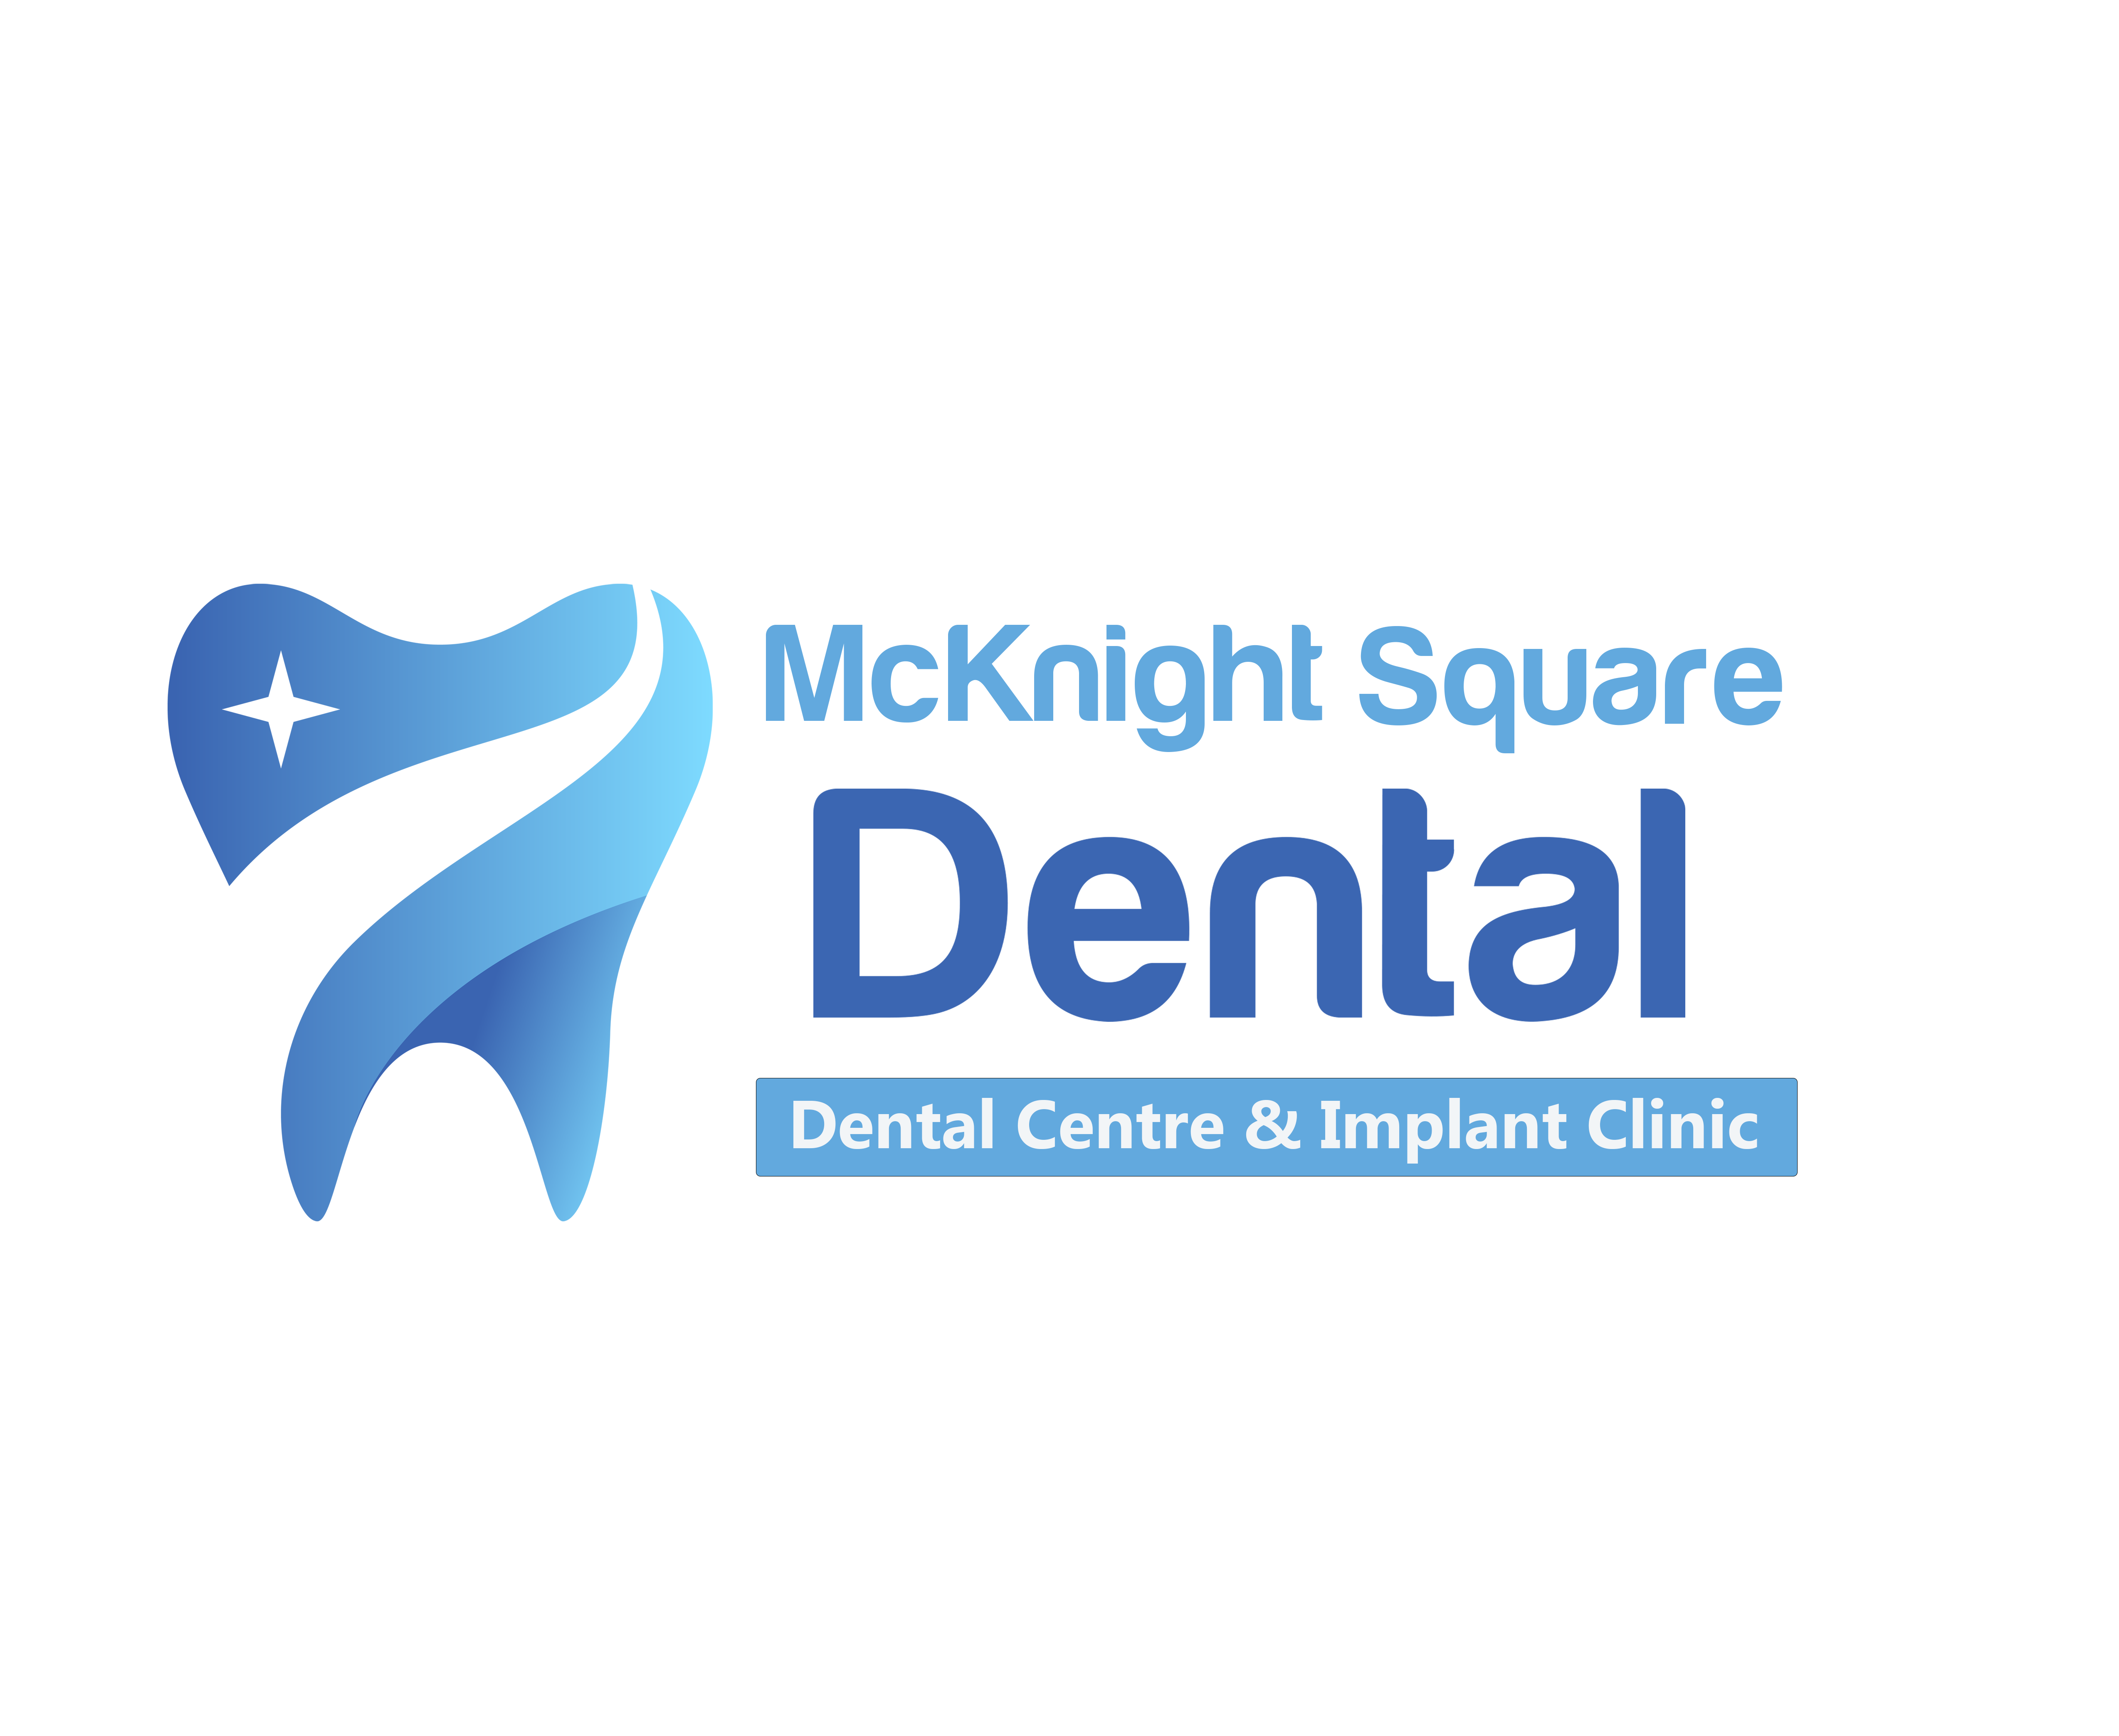 Mcknight Square Dental | Dental clinics | Dentagama